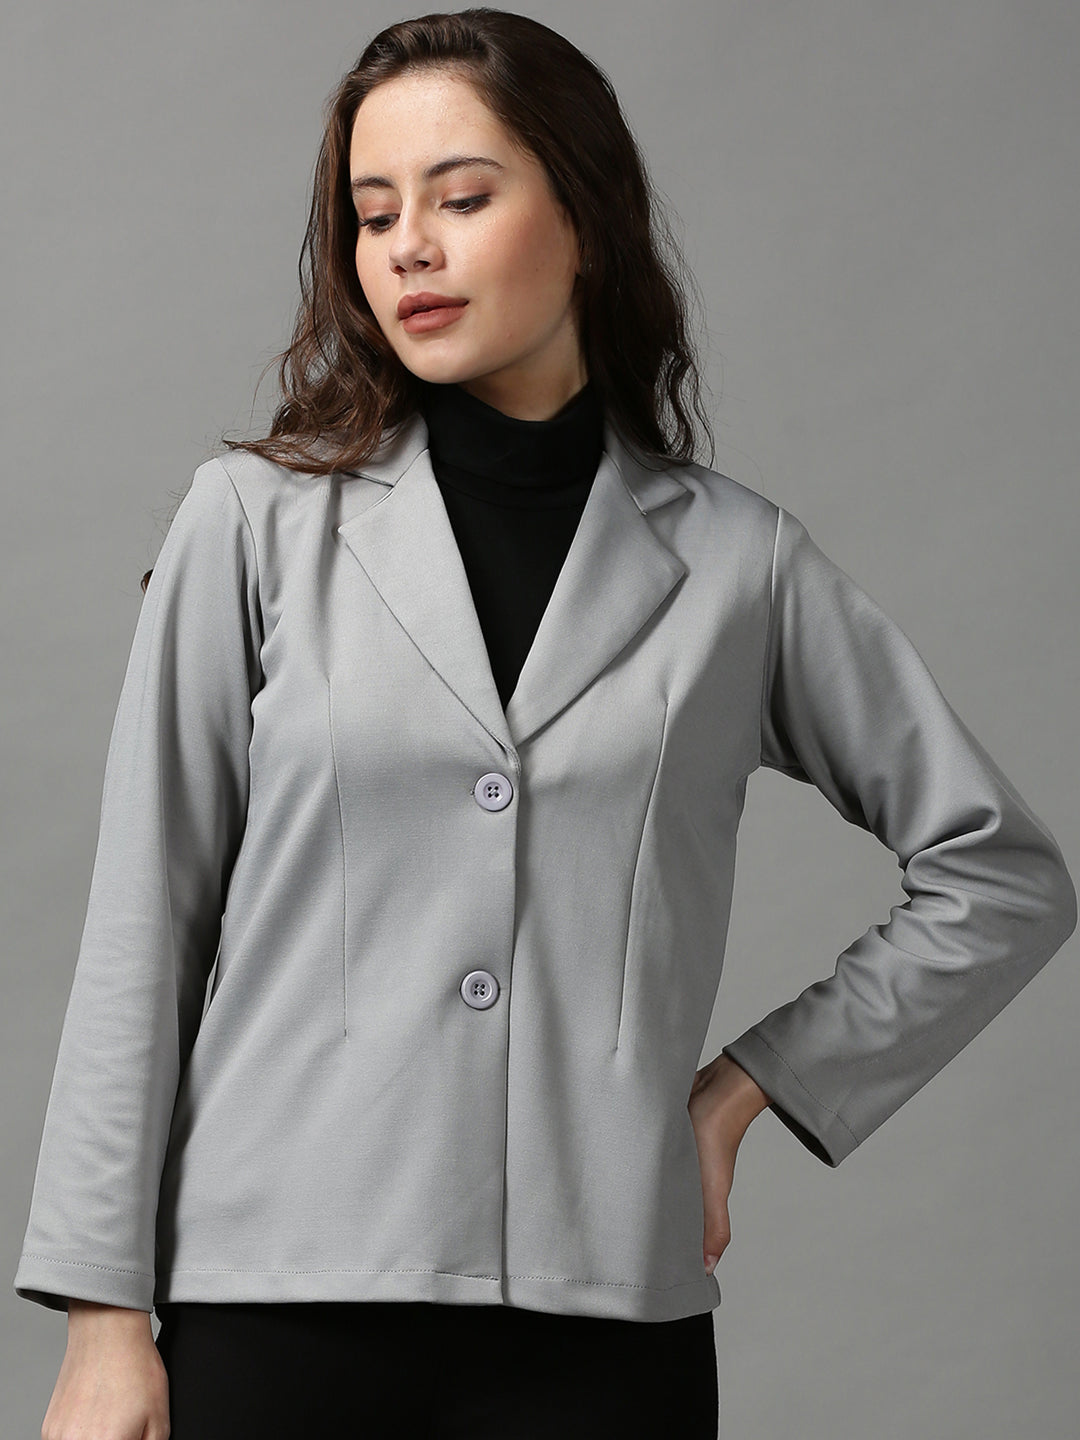 Women's Grey Solid Open Front Blazer